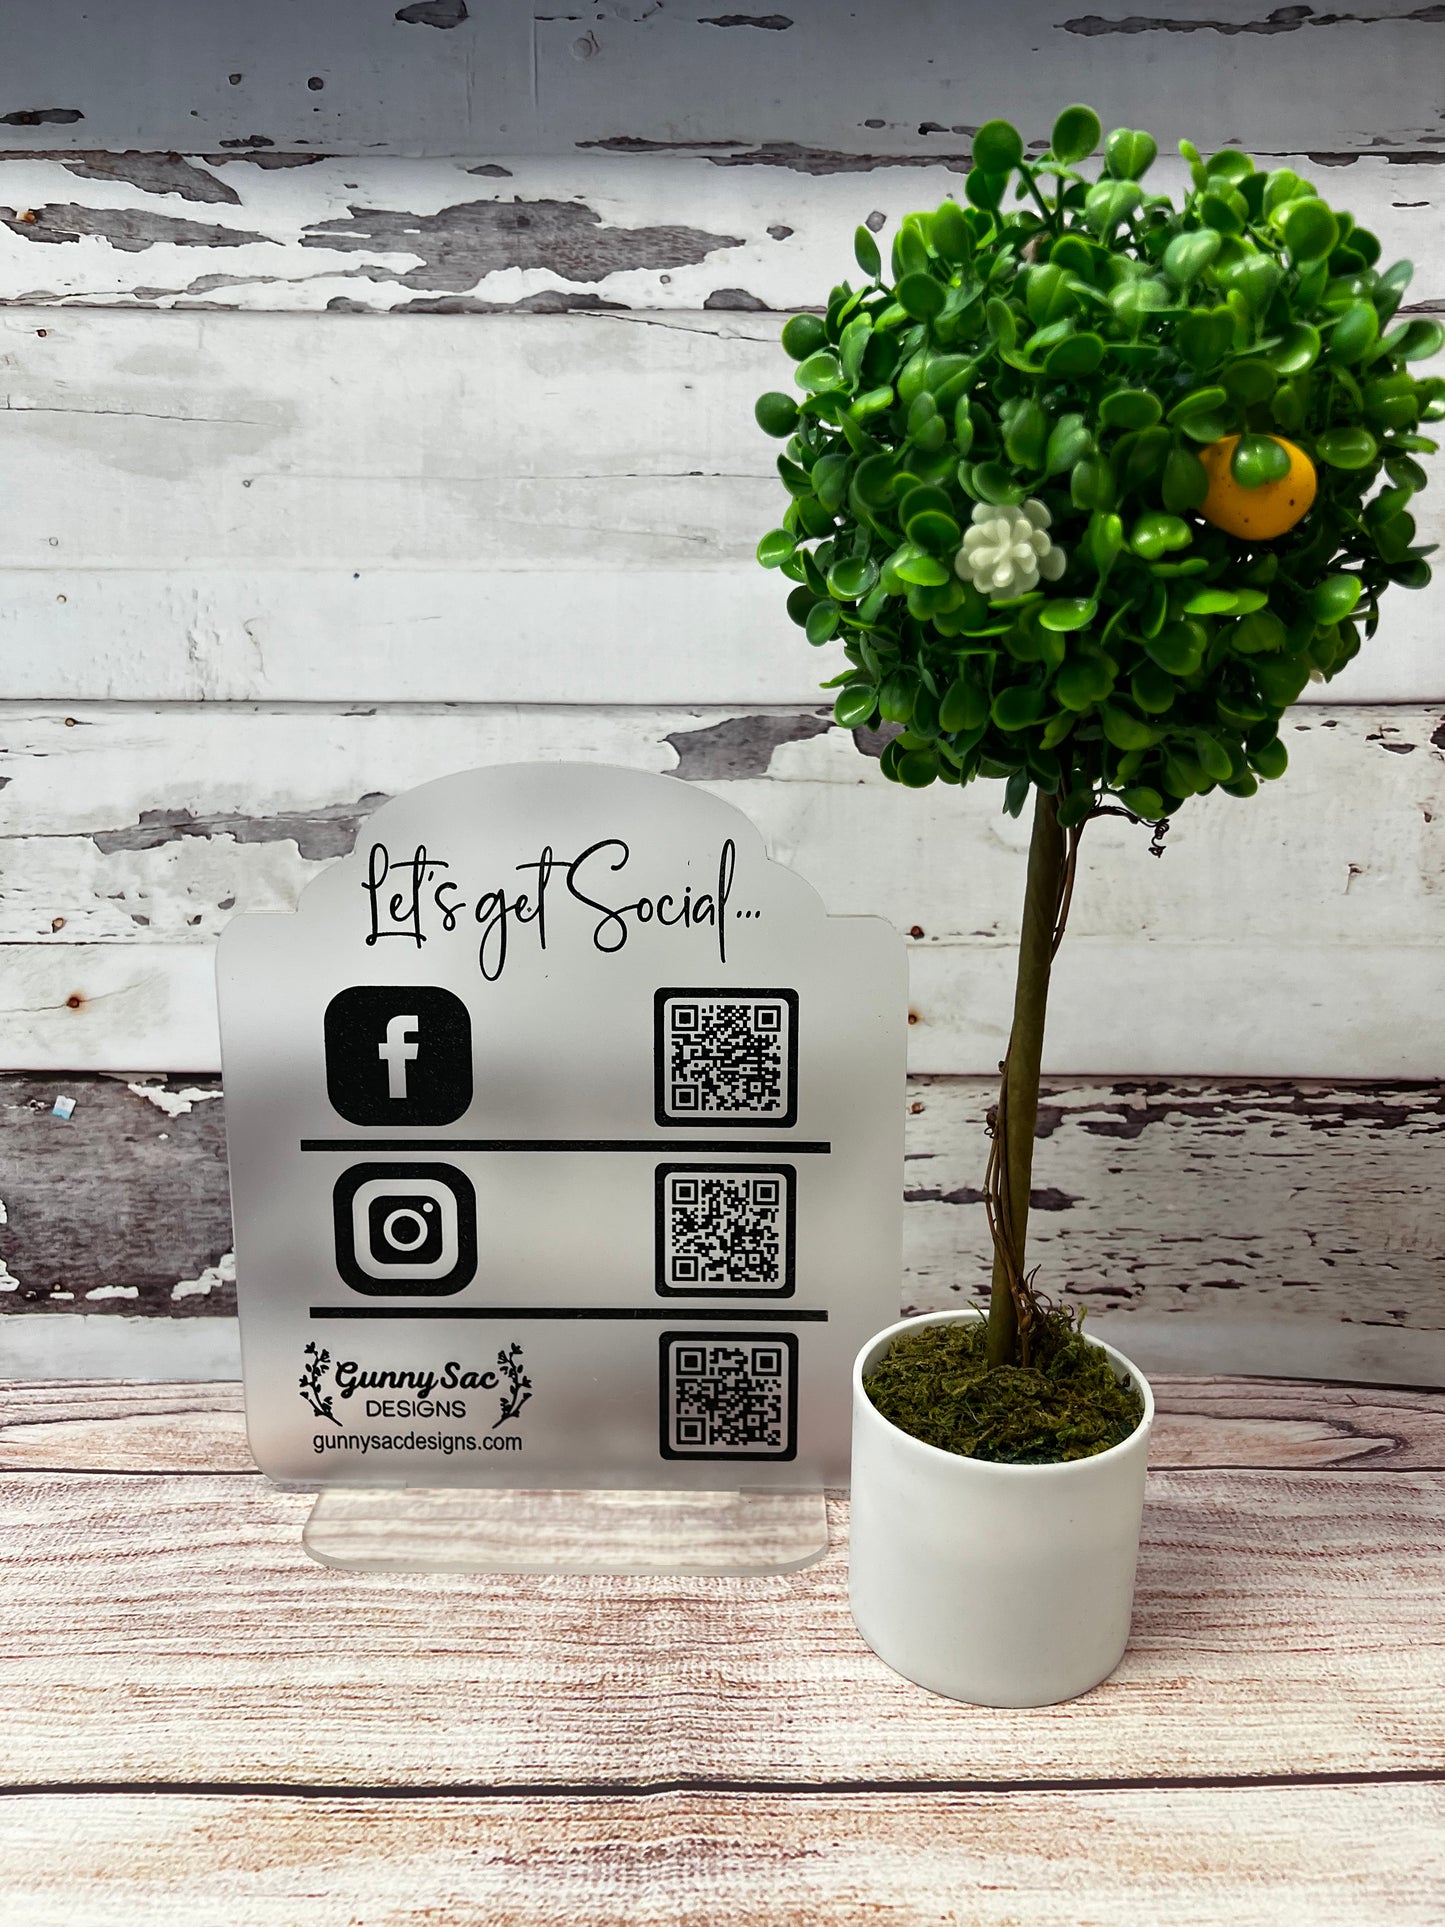 Let’s get social sign | Business sign